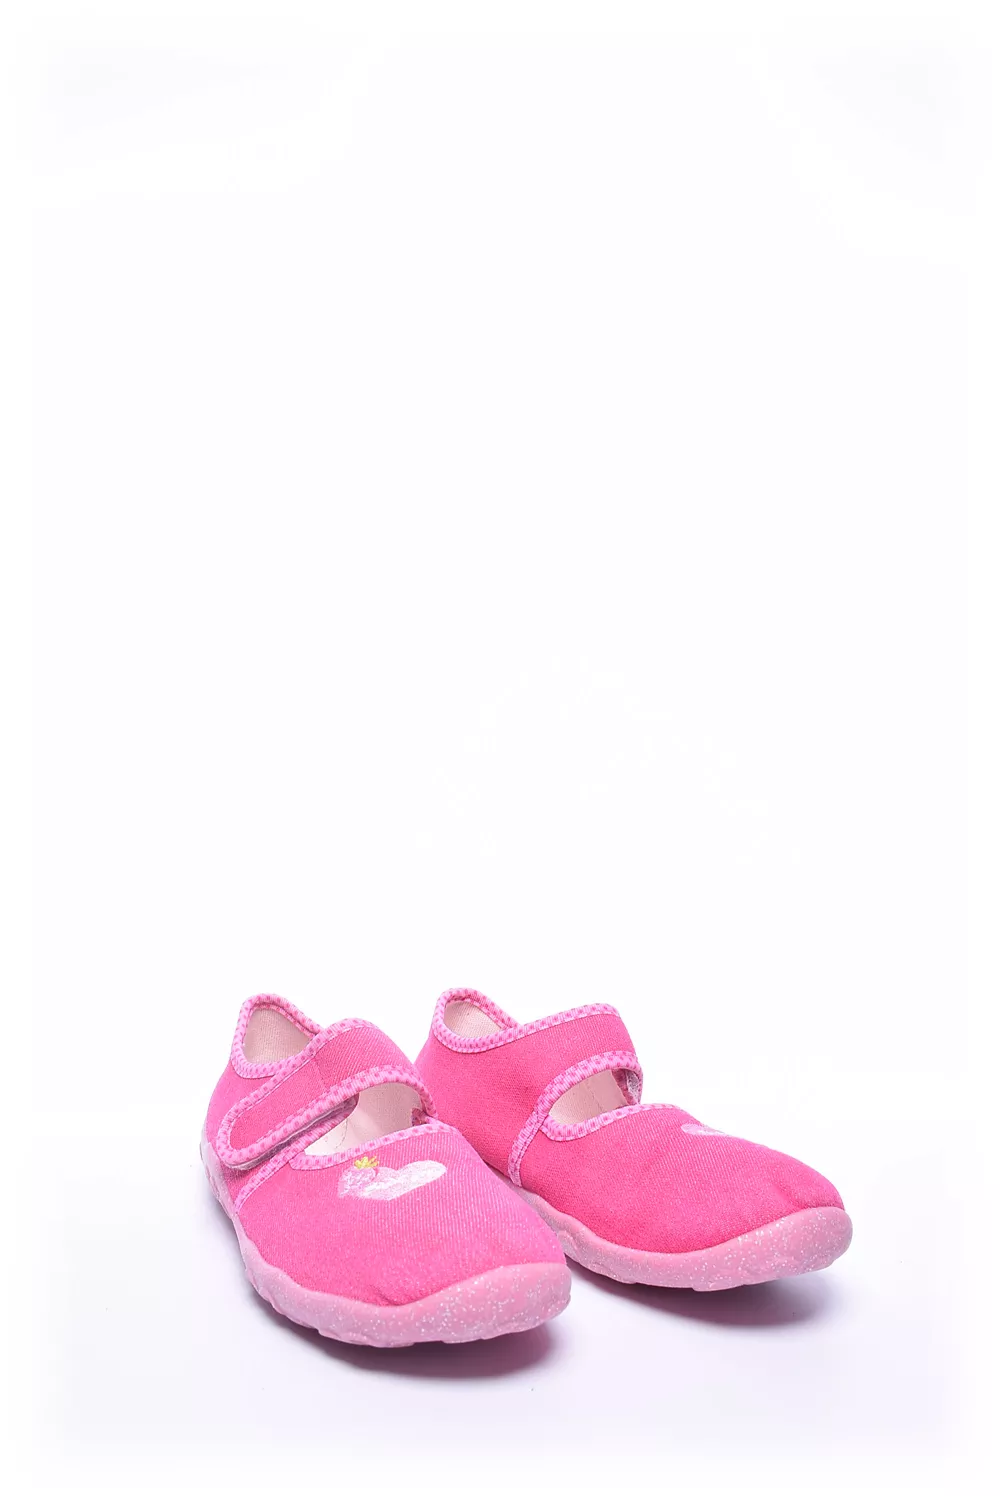 Pantofi fete [3]